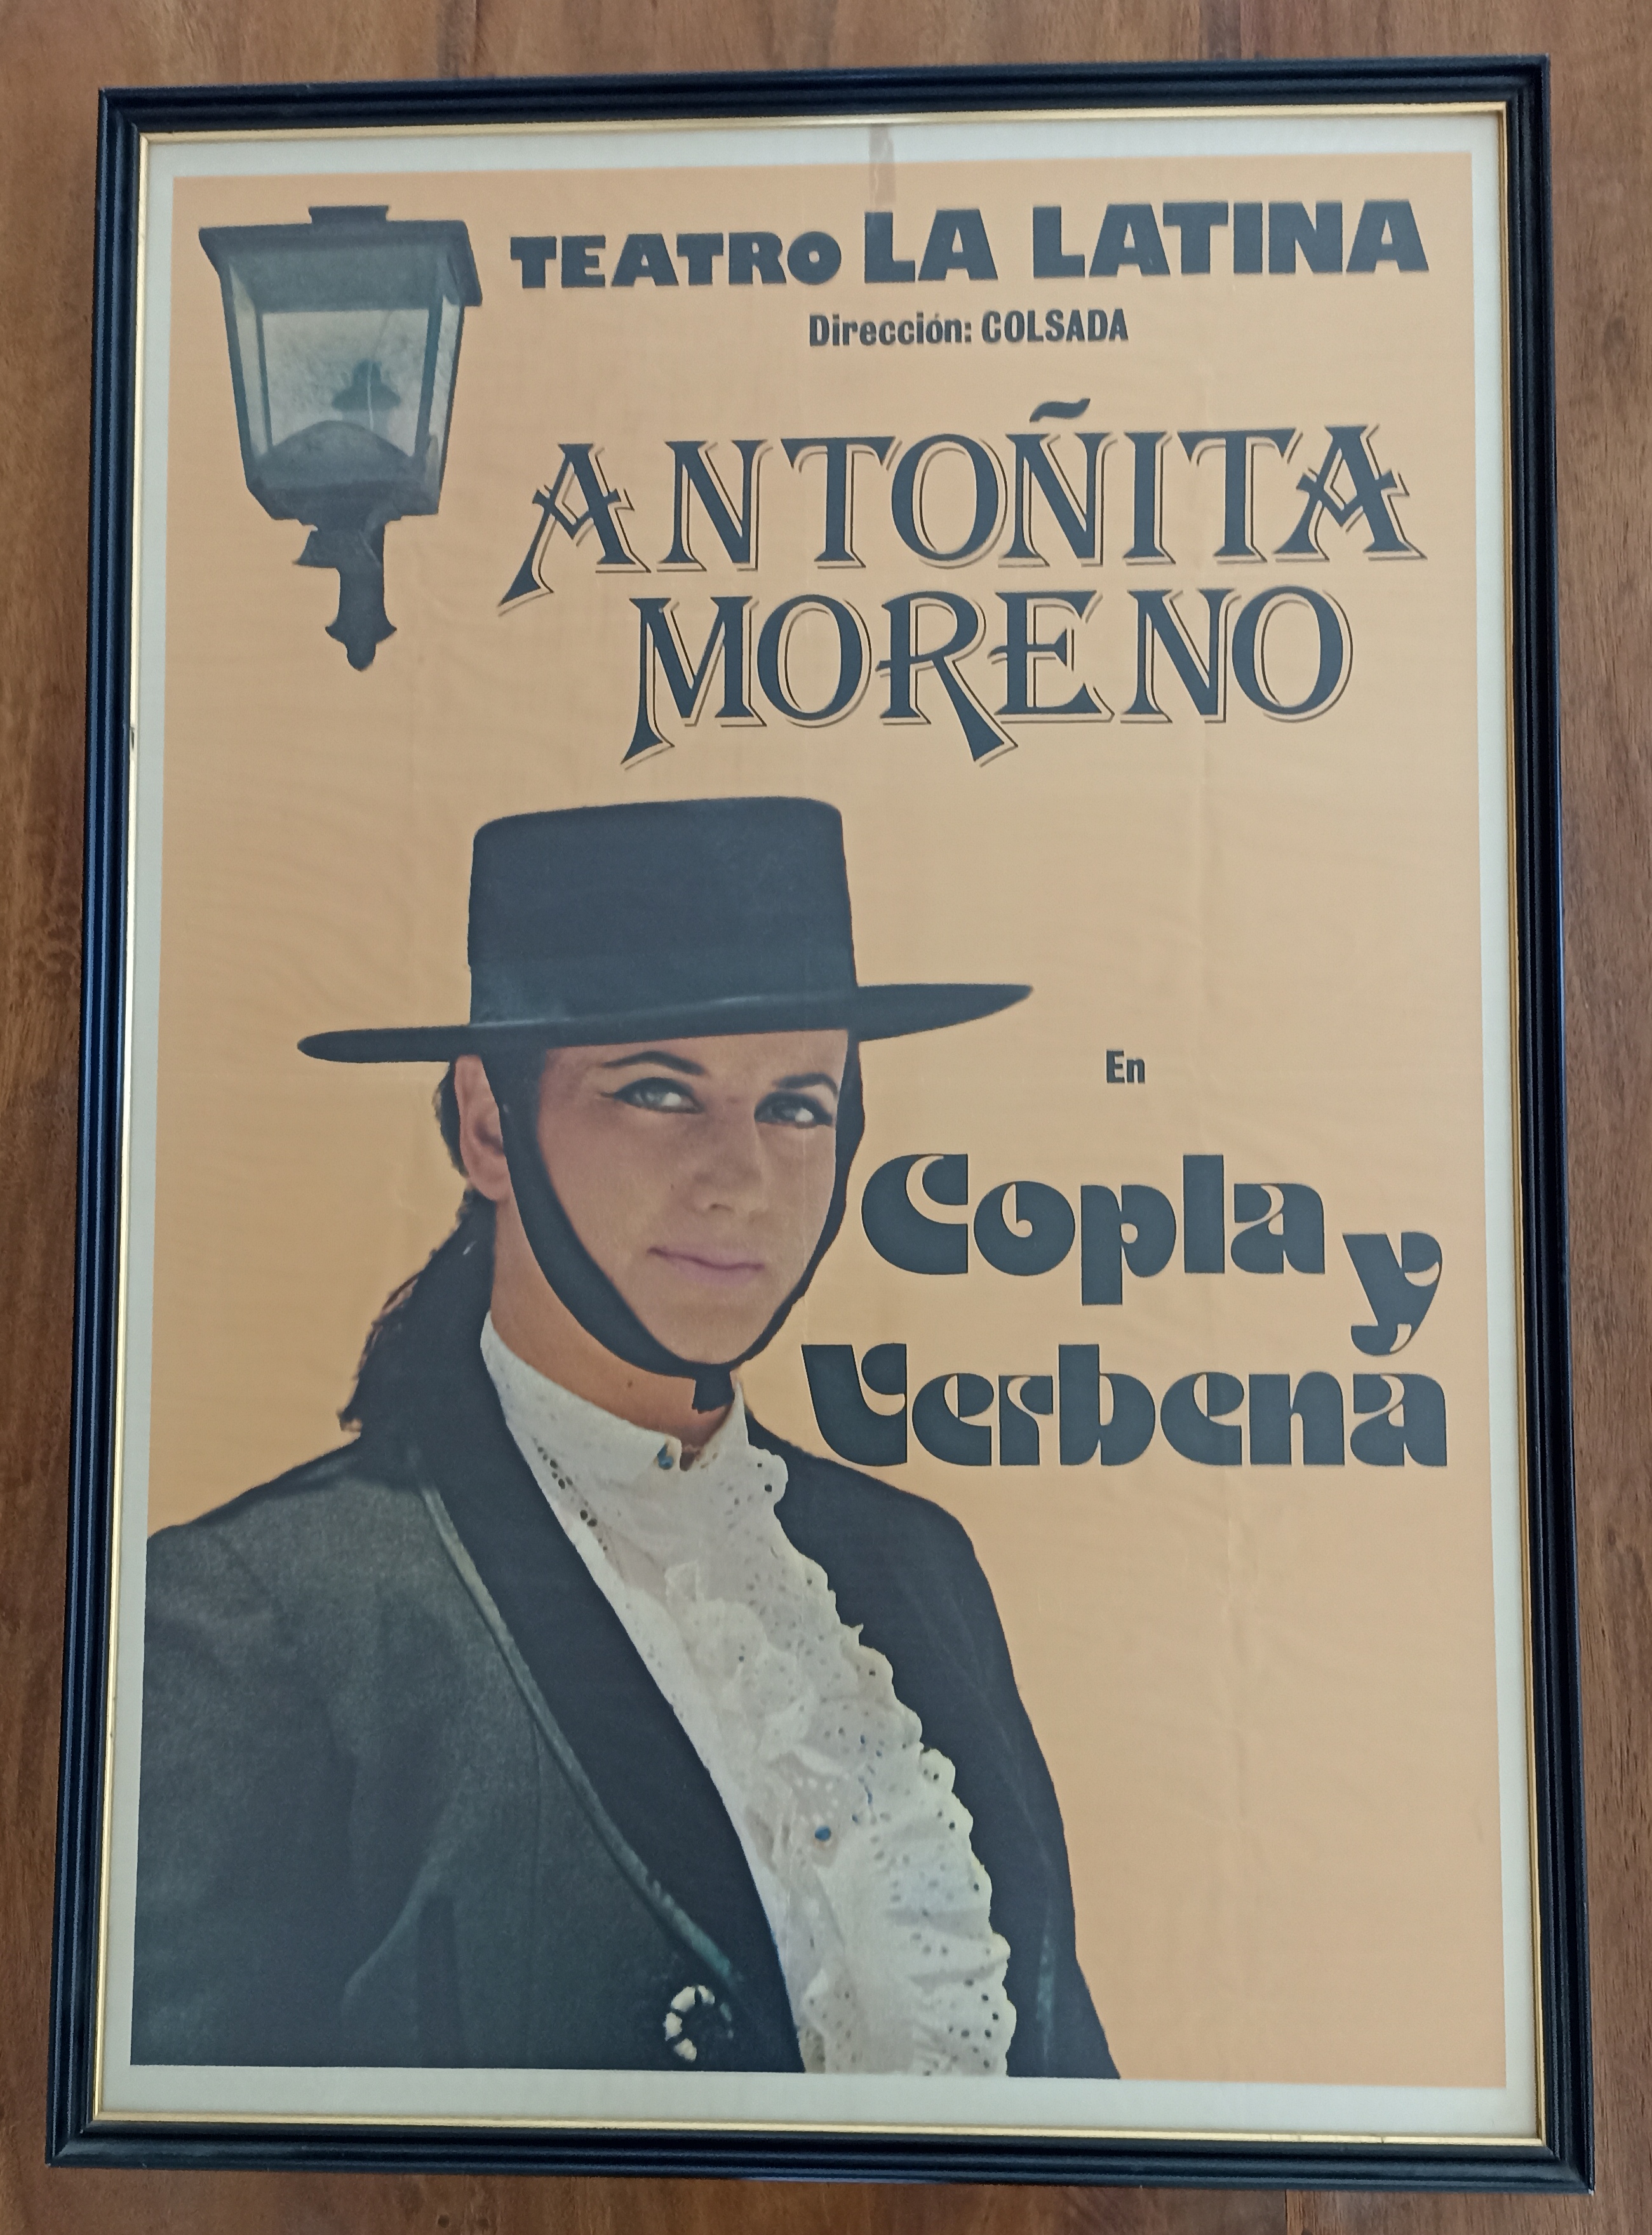 Antoñita Moreno, Copla y Verbena. Teatro La Latina, Coslada